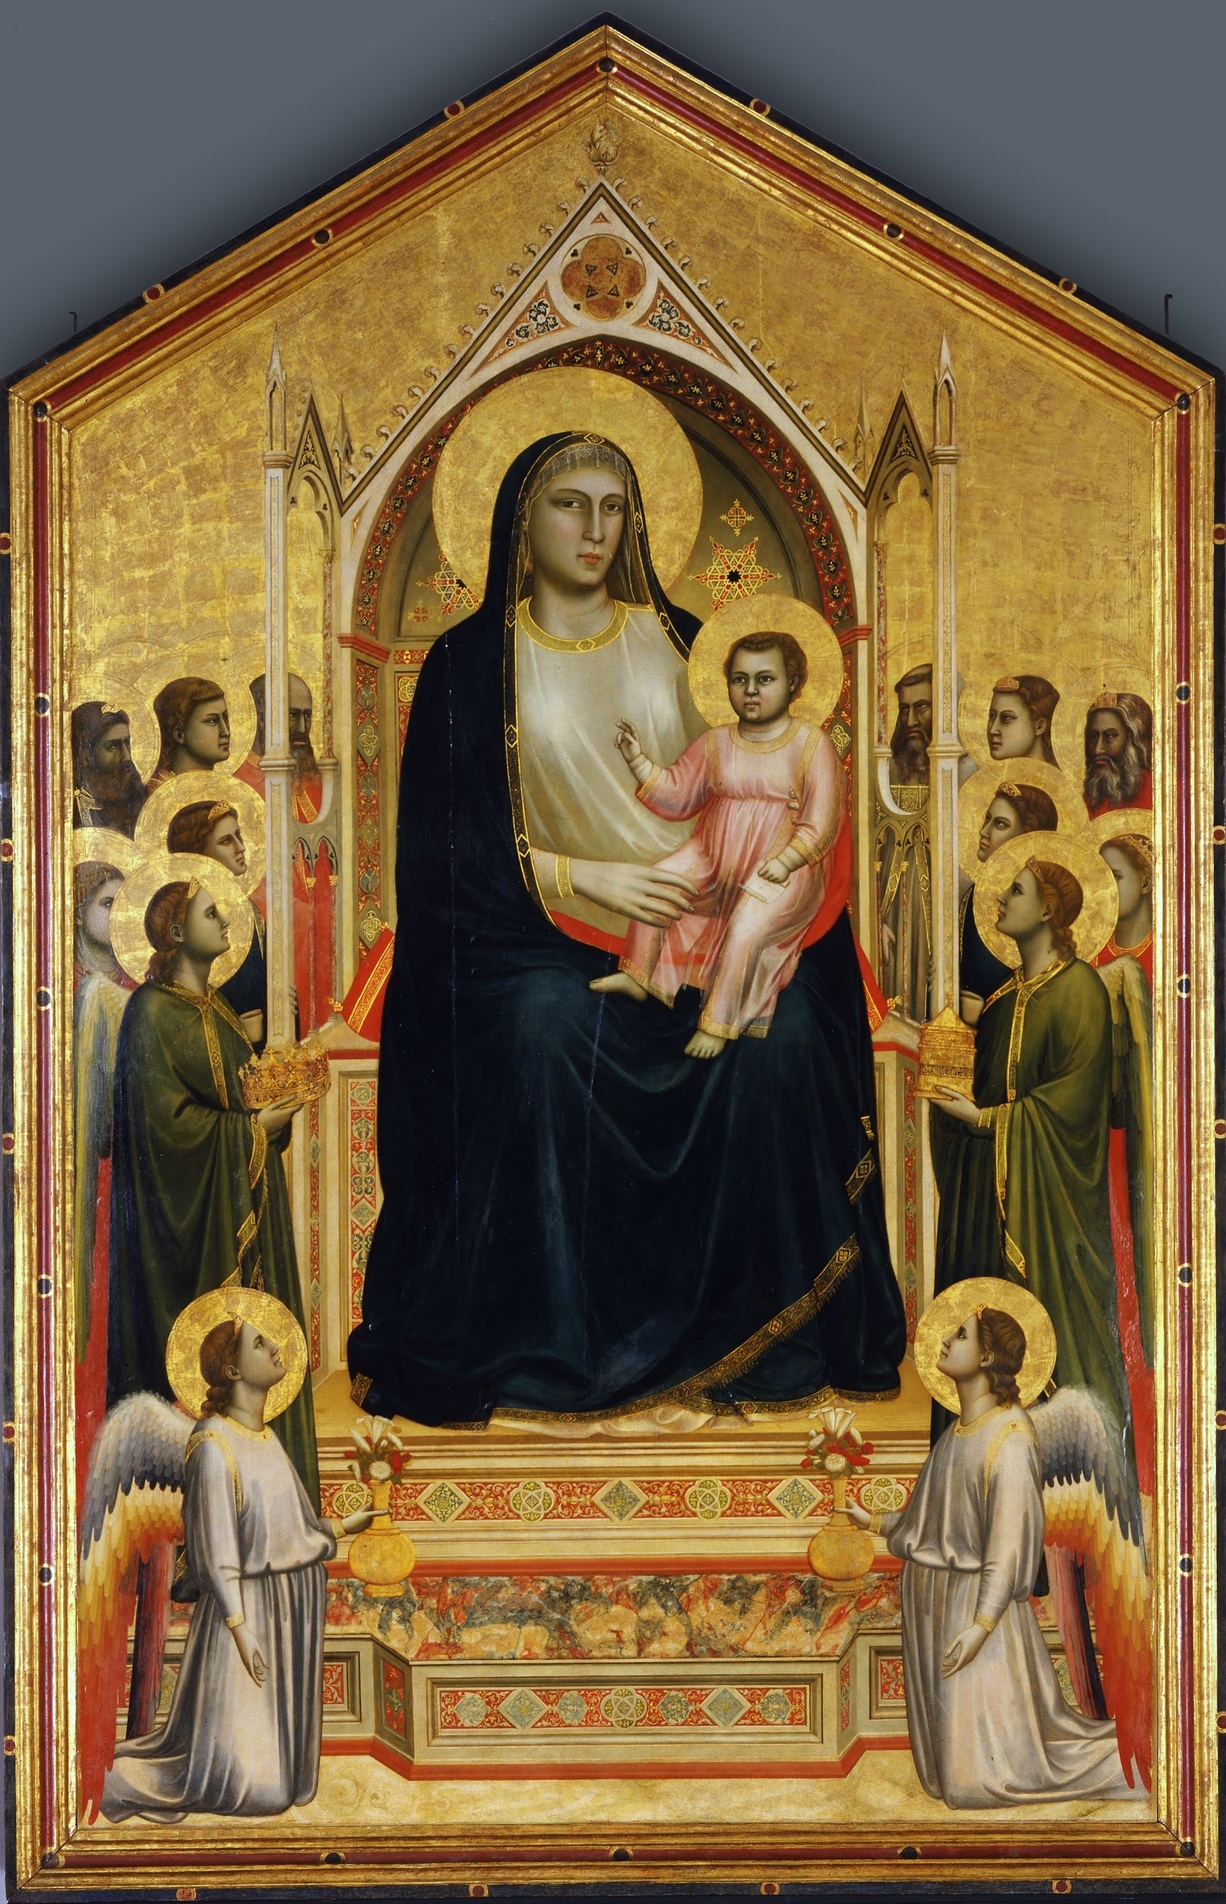 The Ognissanti Madonna by Giotto di Bondone - c. 1310 - 325 cm × 204 cm Galleria degli Uffizi